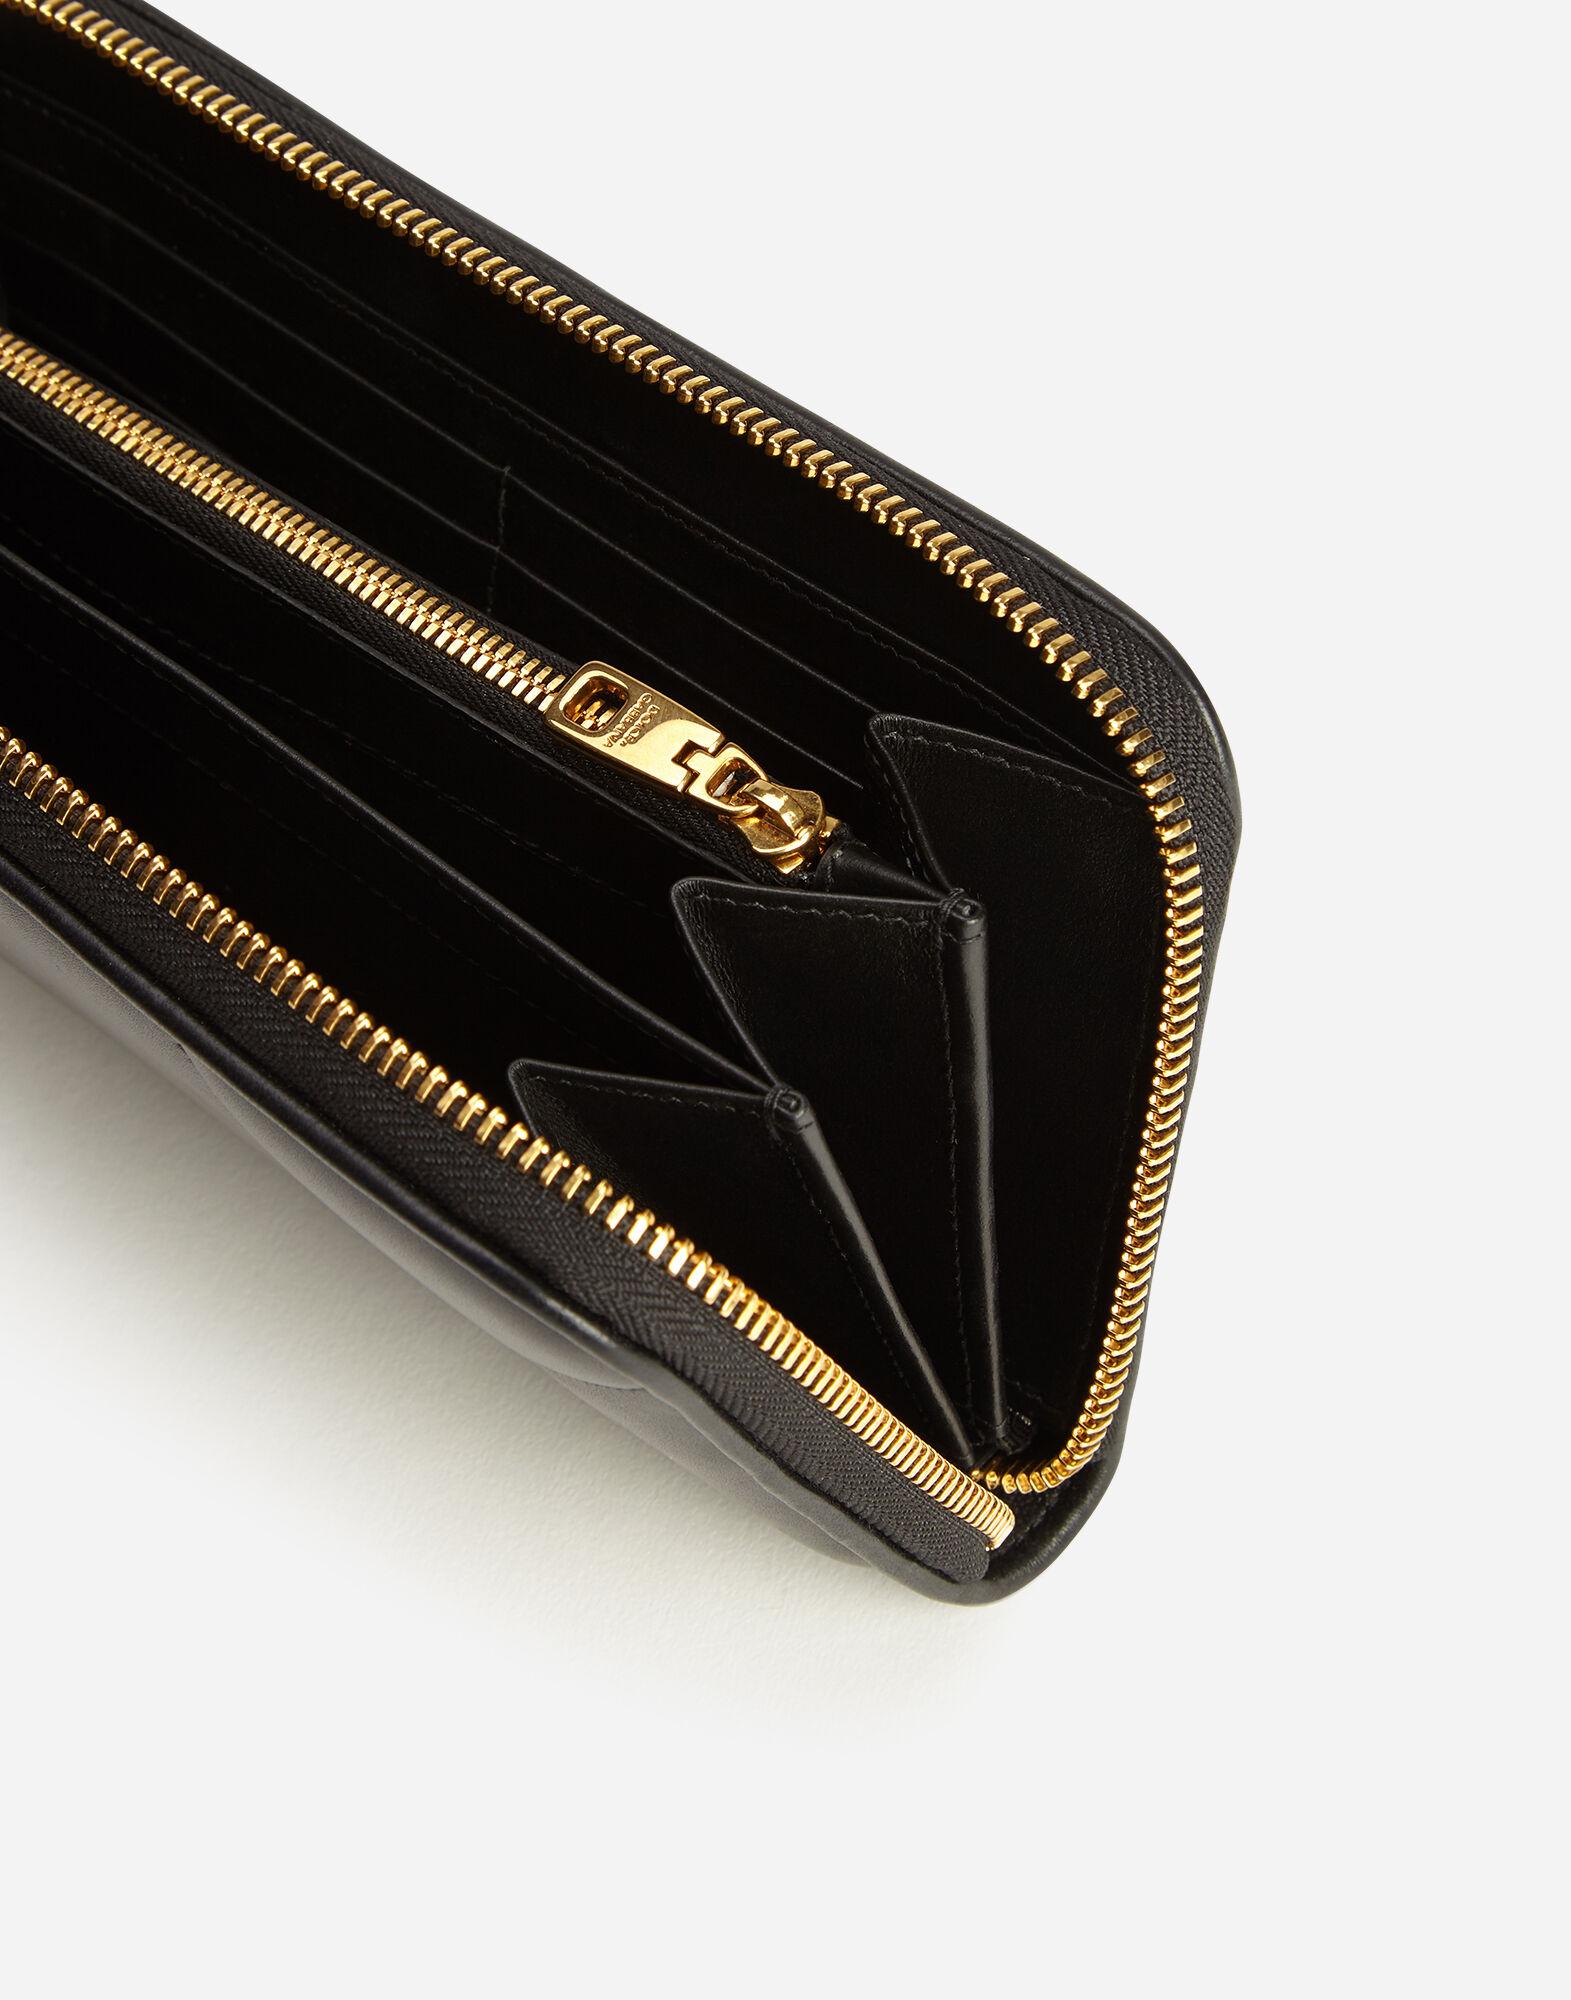 Dolce & Gabbana Leather Zip-around Devotion Wallet in Black - Lyst